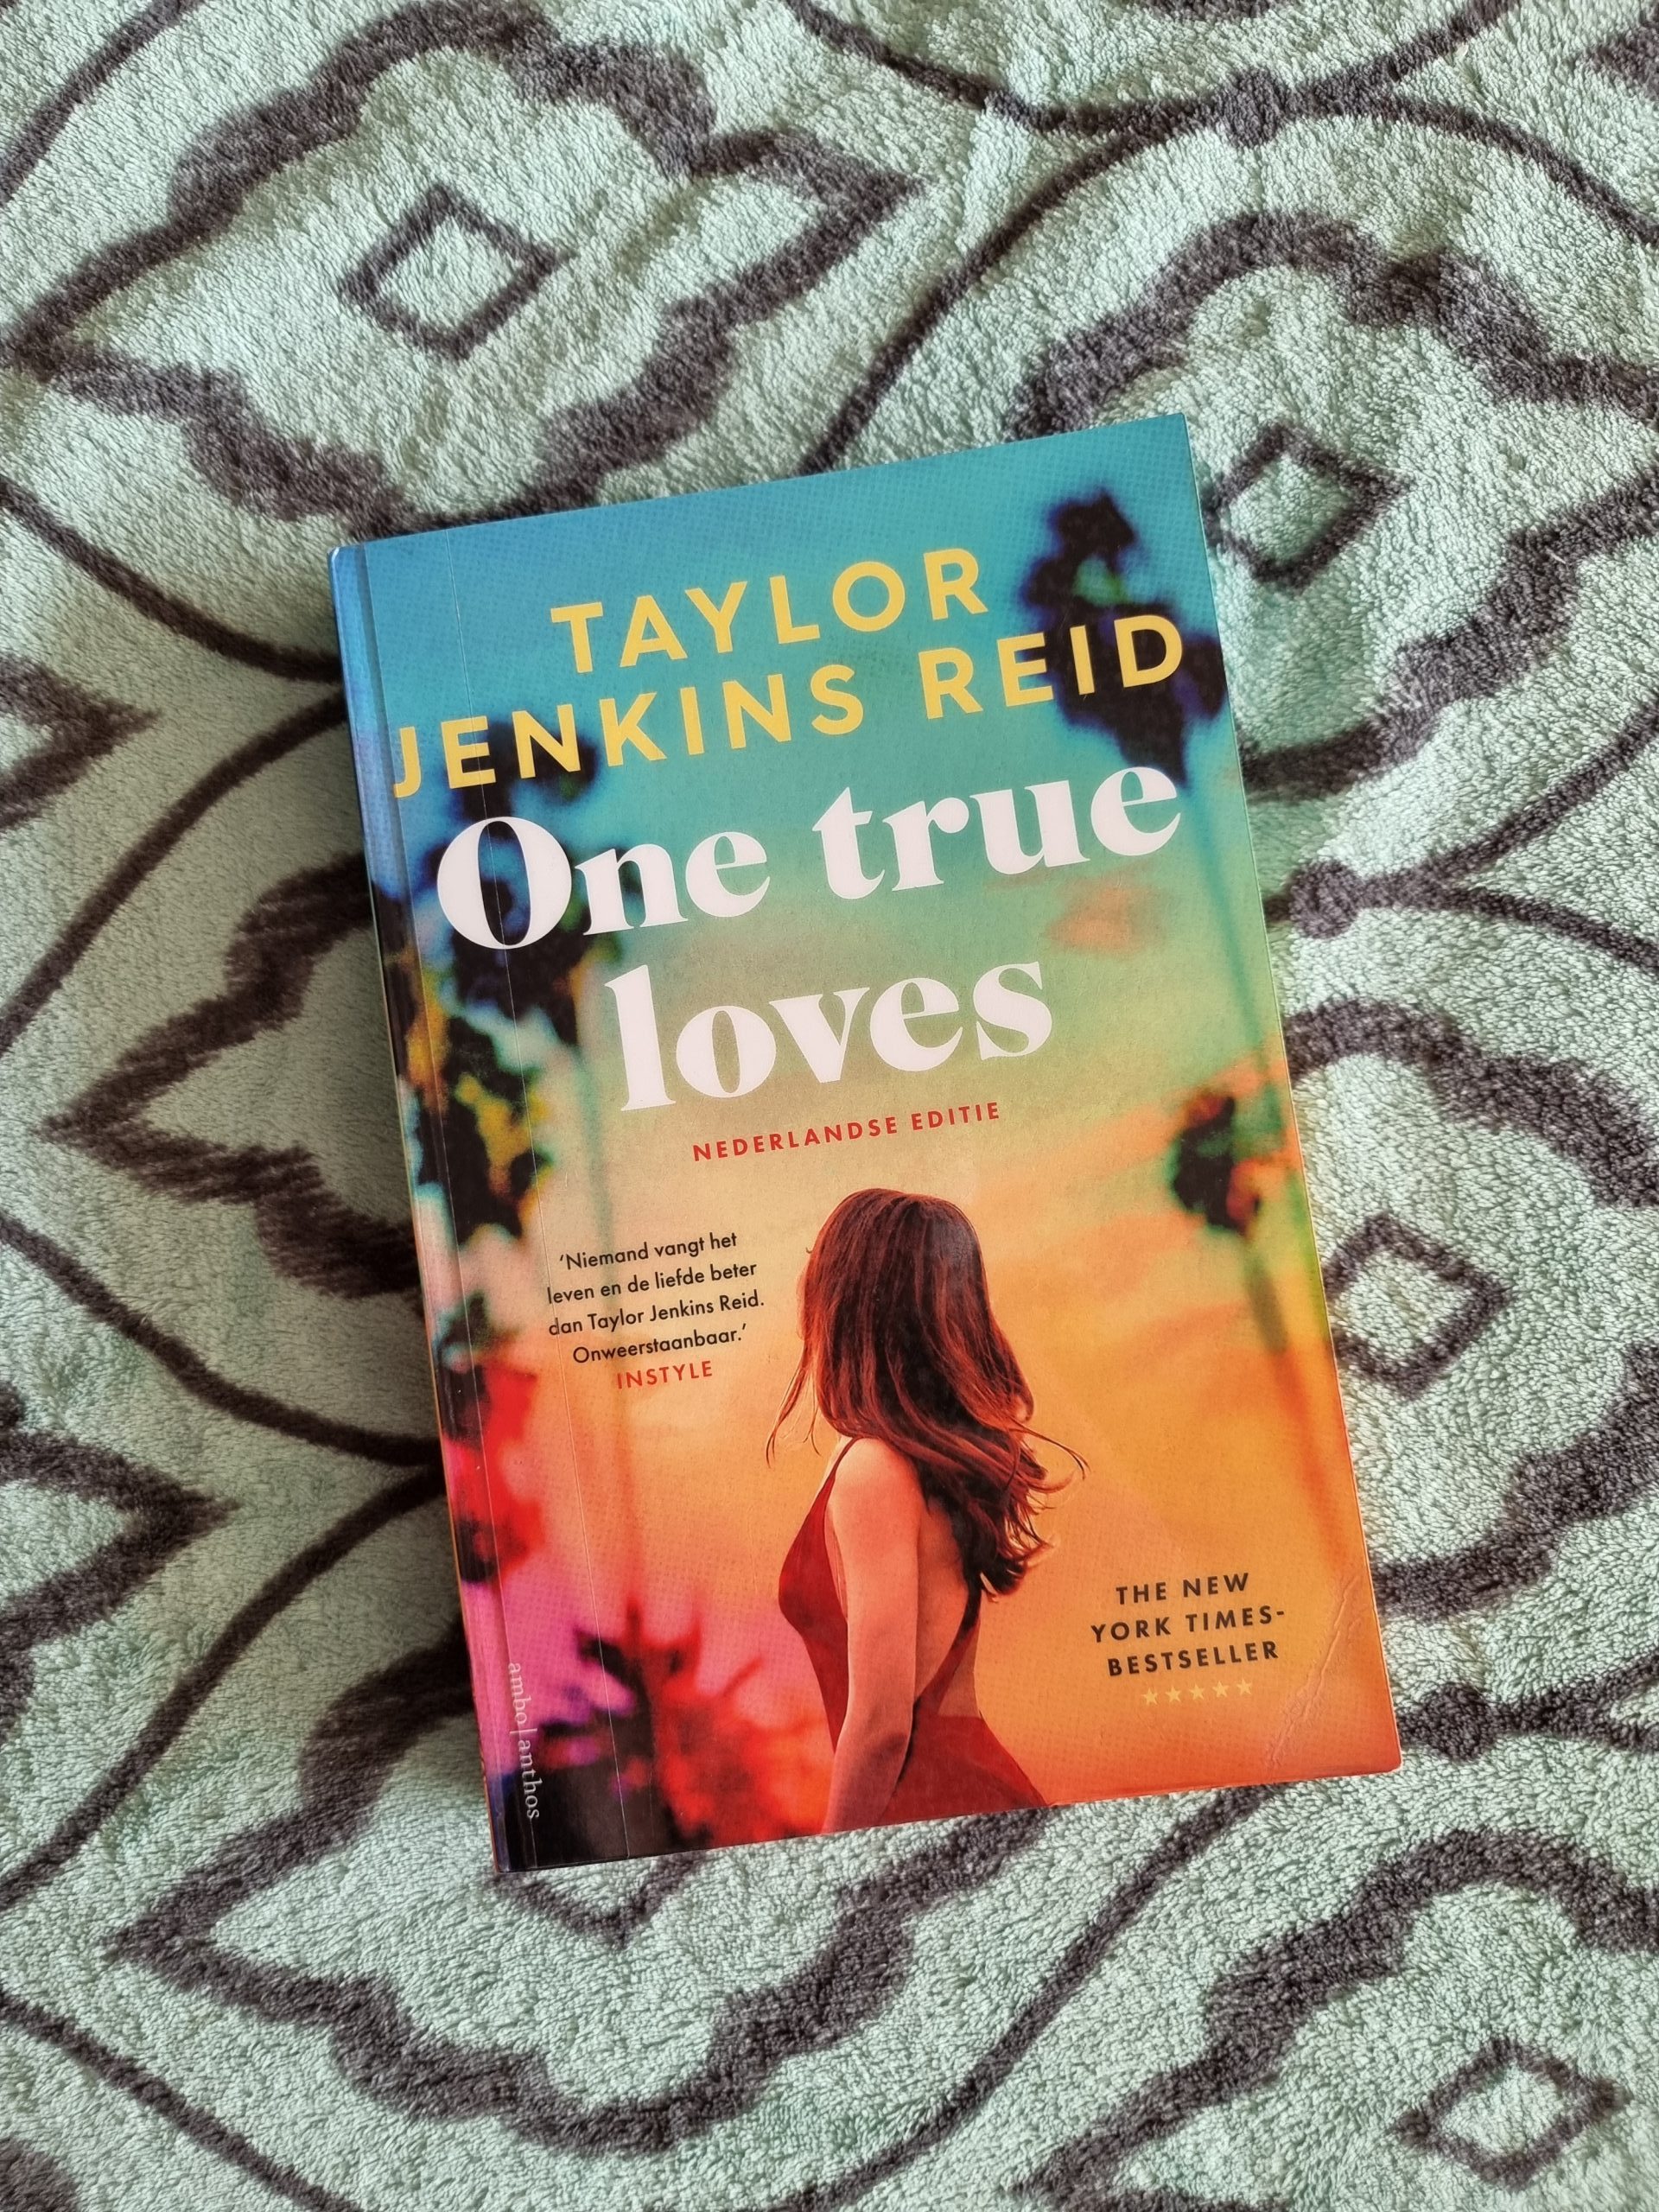 Books || One true loves – Taylor Jenkins Reid